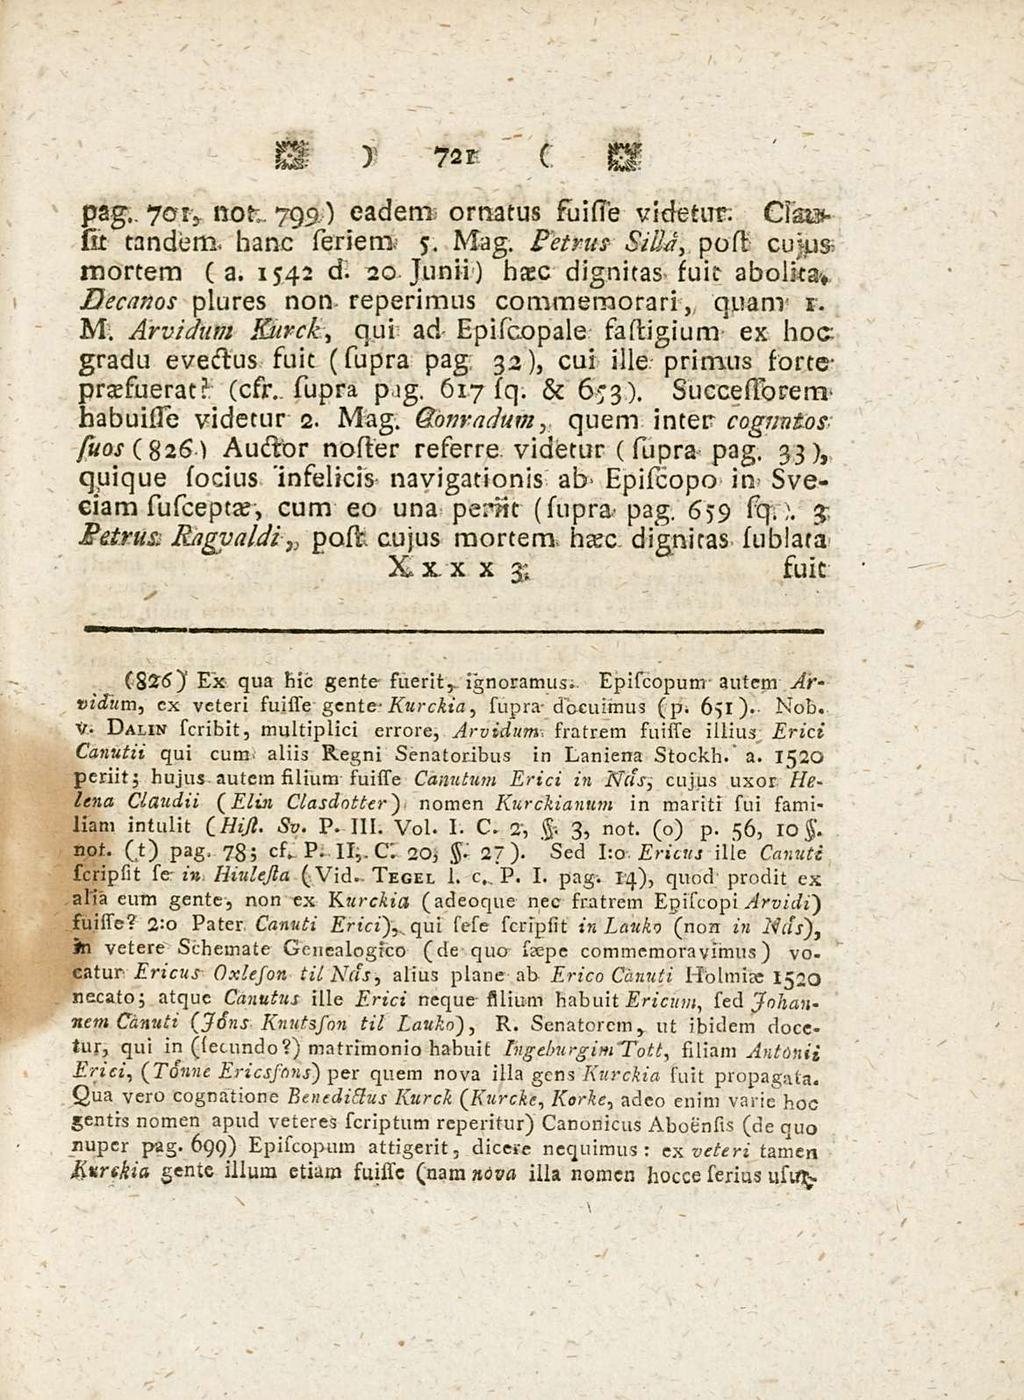 721 pag., 701, not;. 799) eadem ornatus suisse videtur. Cls& sit tandem, hanc seriem 5. Mag. Fetrus silia, post cllus mortem (a. 1542 d. 20 Junii) haec dignitas suit abolita.